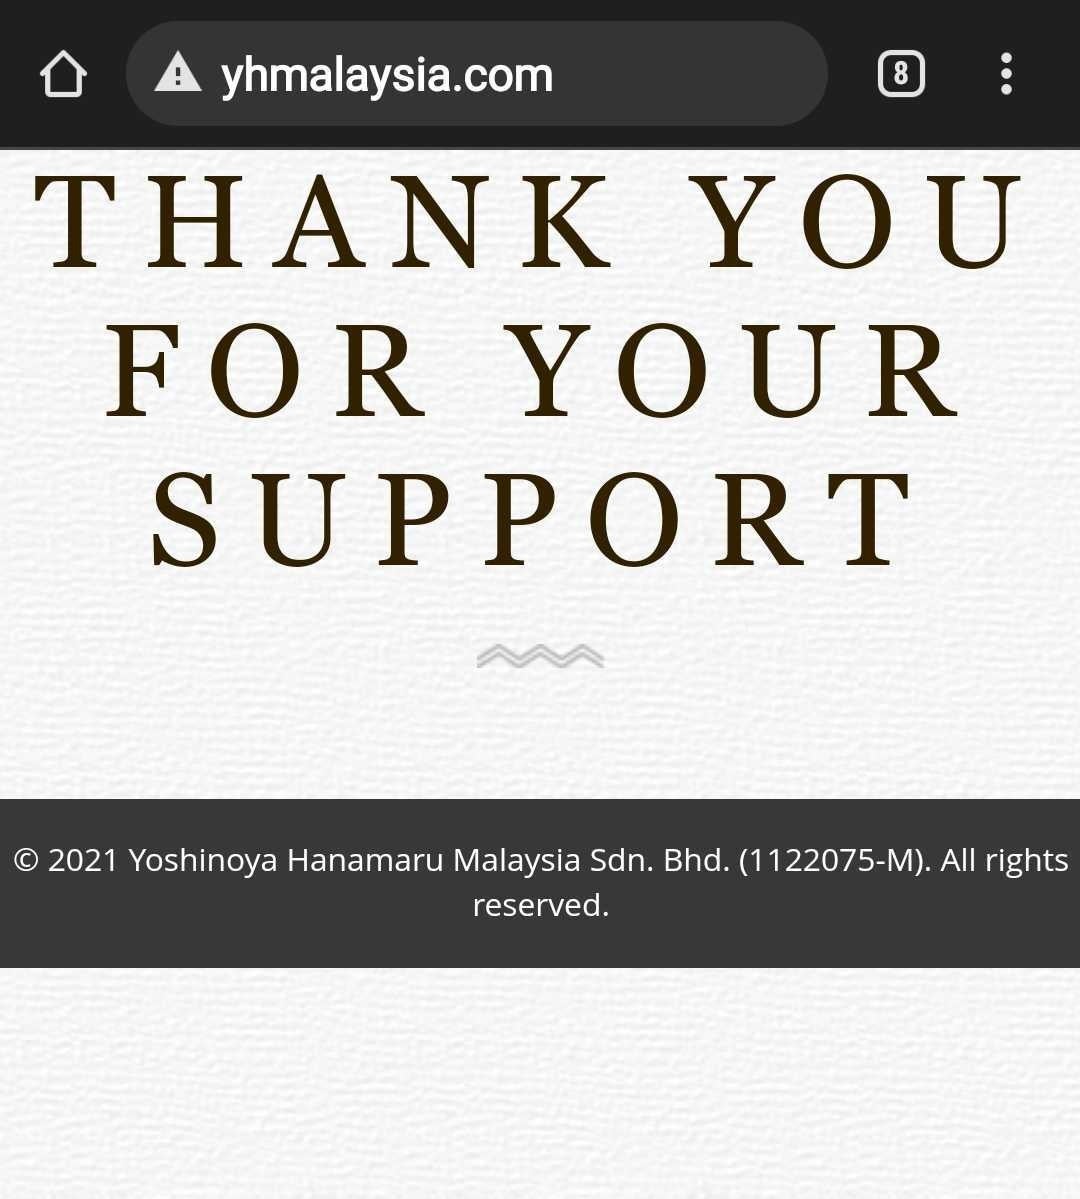 yoshinoya website thank you